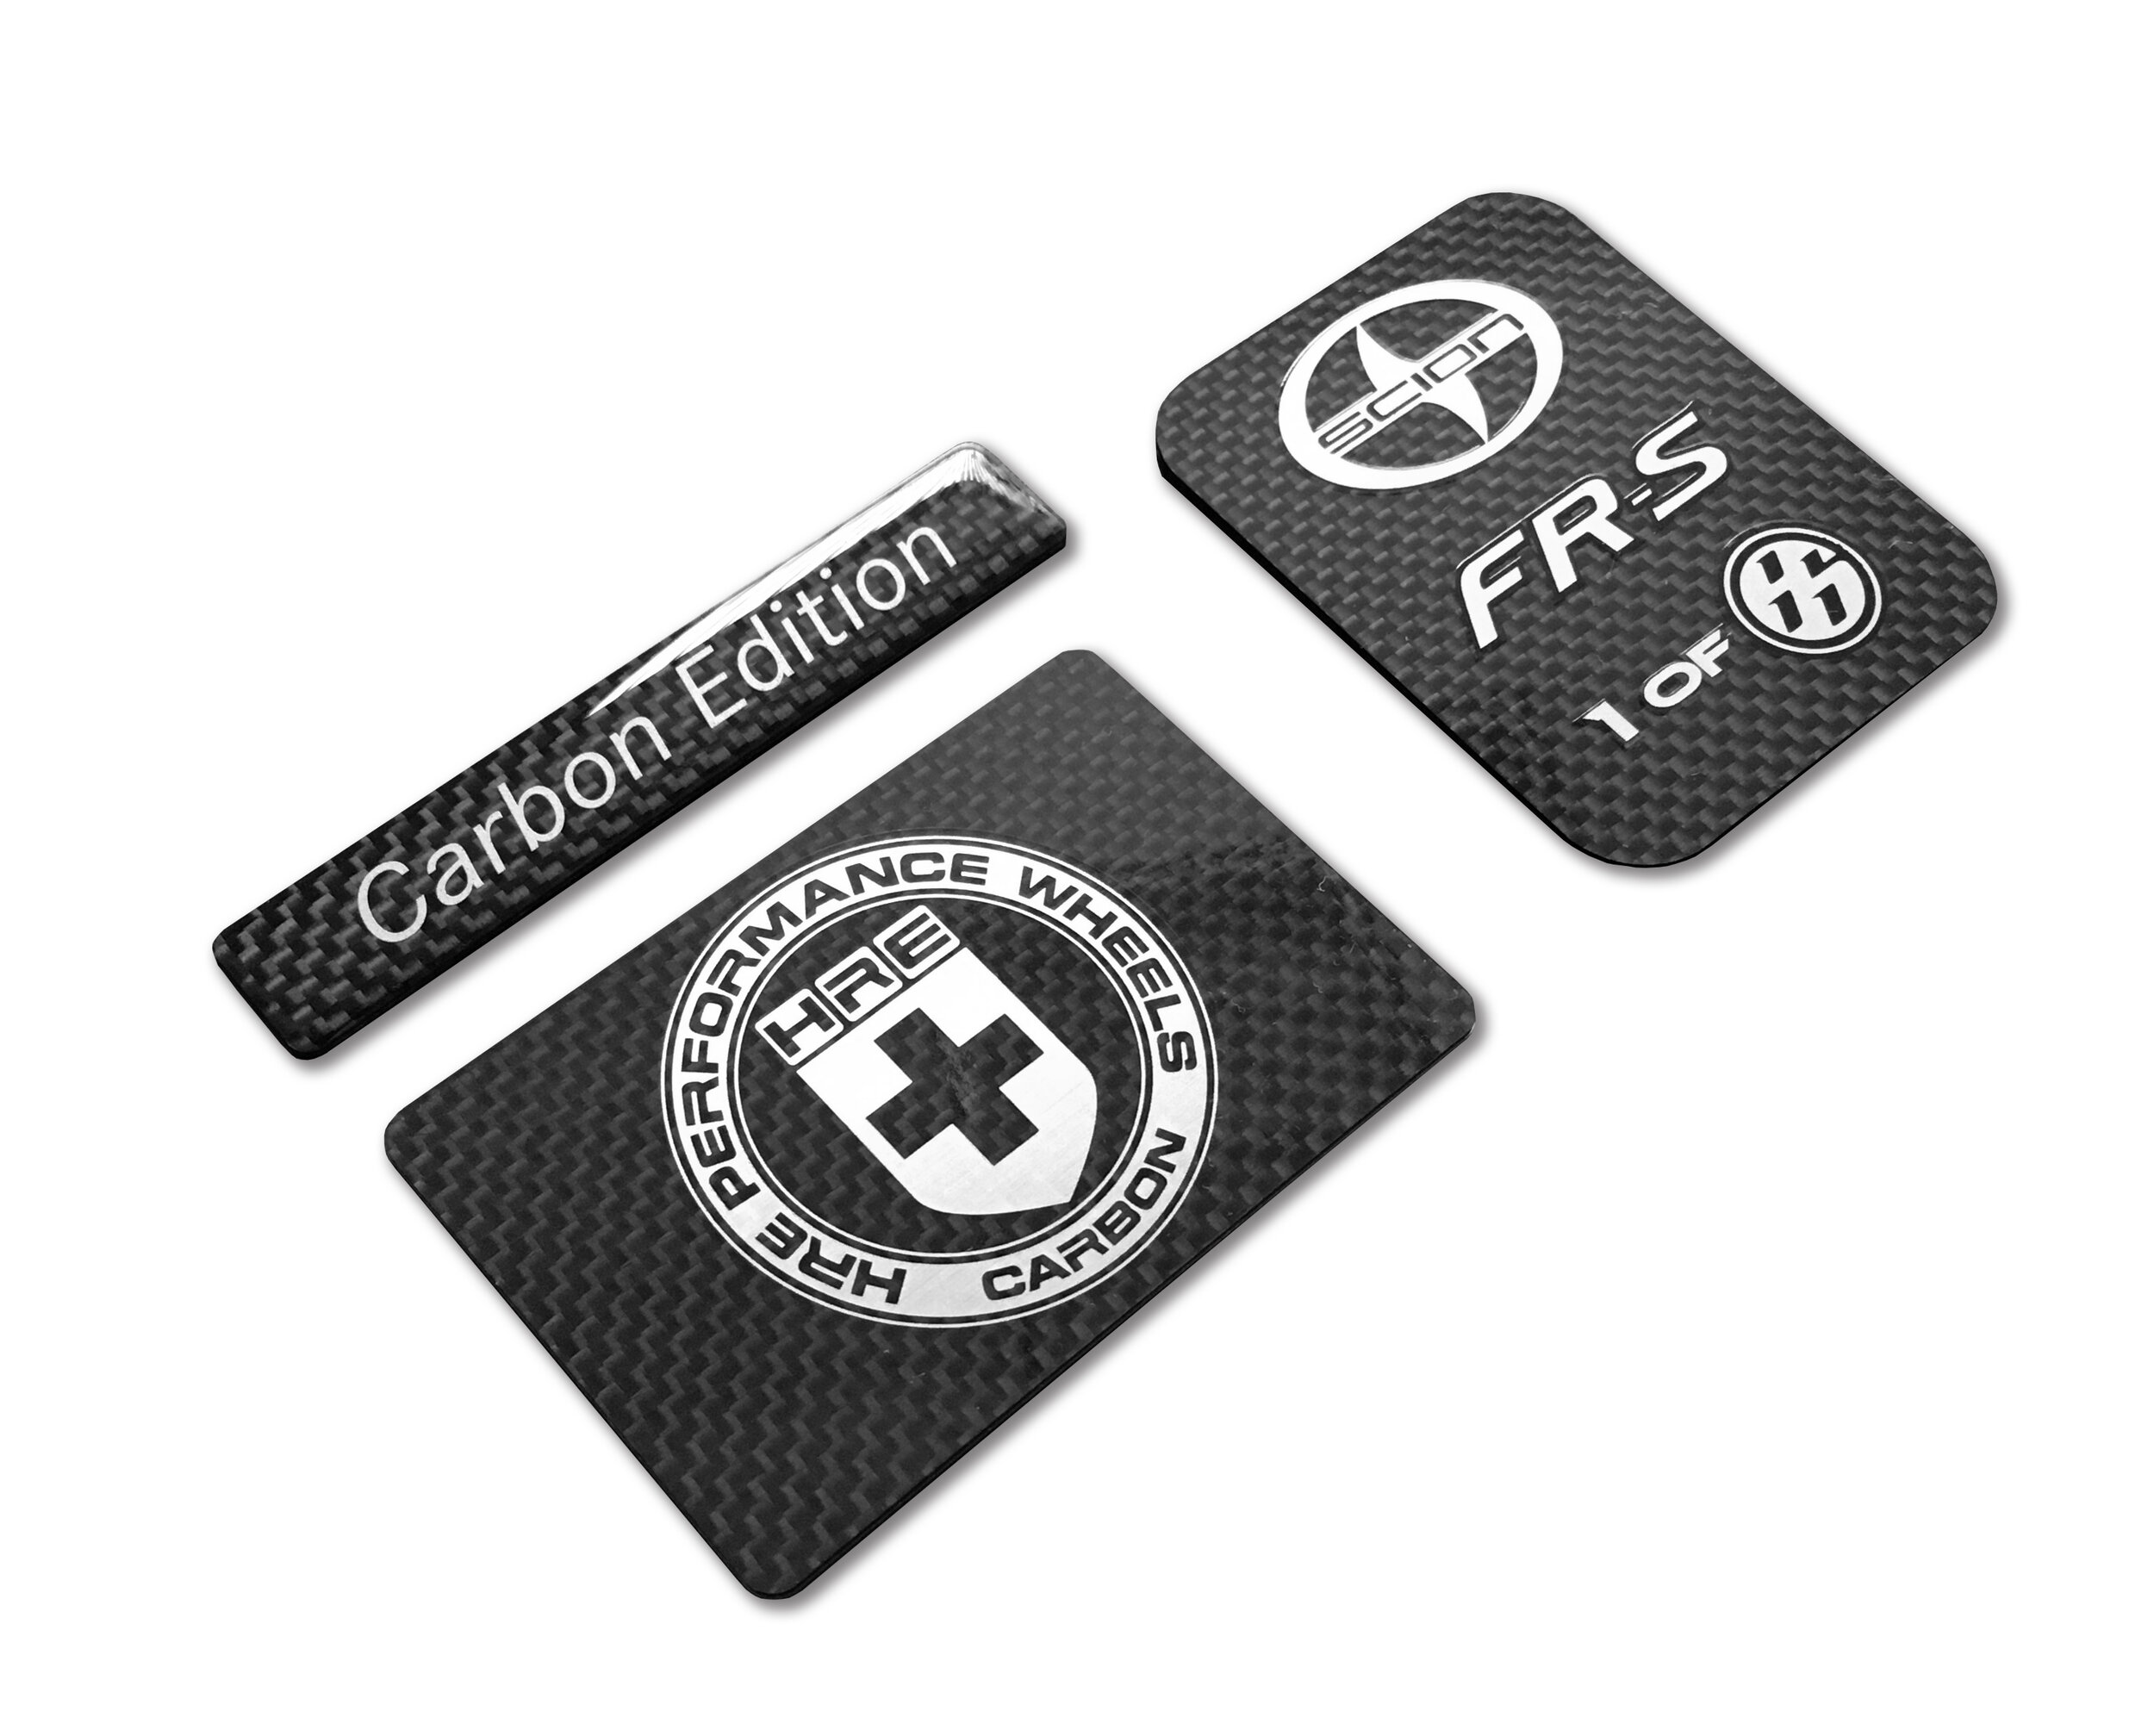 Carbon Fiber Badges.jpg